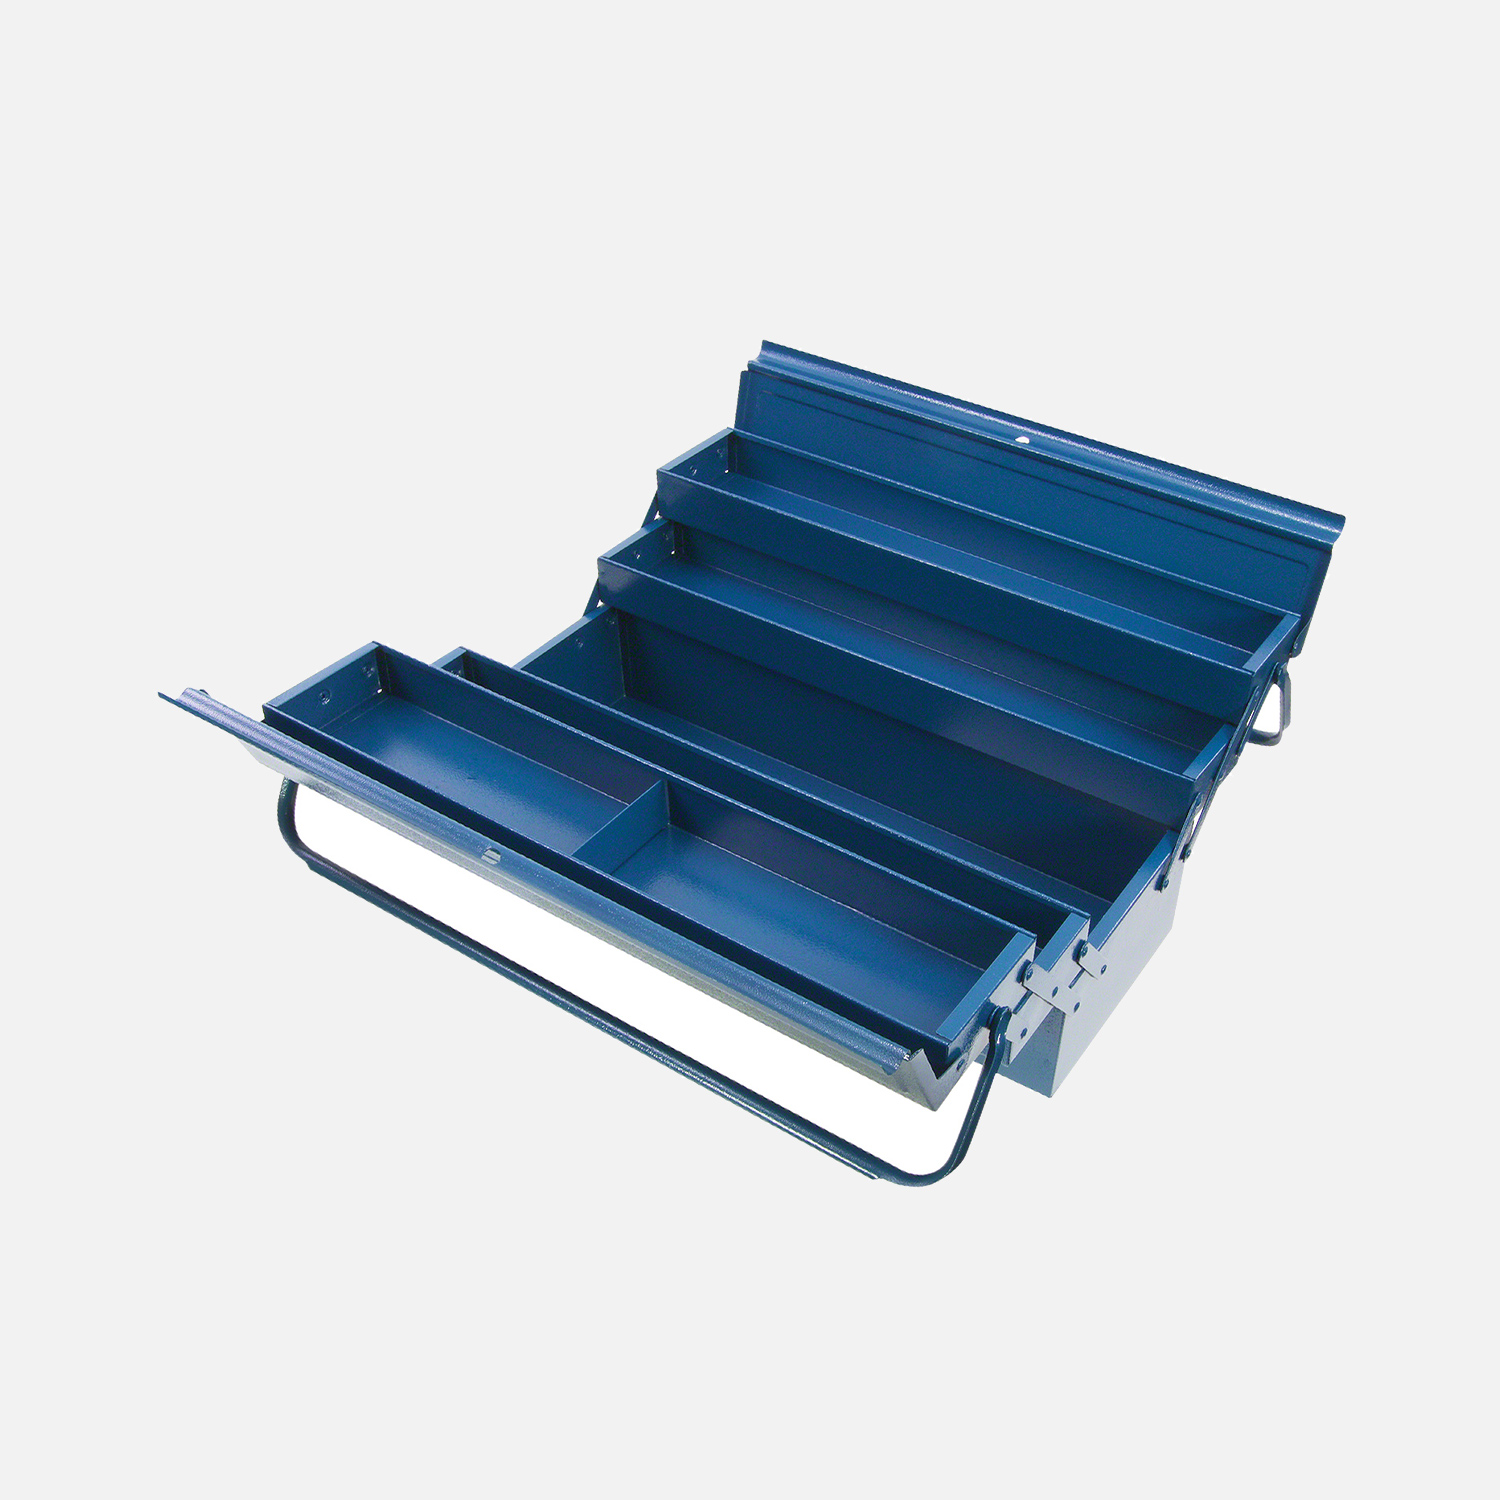 1 Allit Premium Metall-Werkzeugkasten, Werkzeugkoffer mit 4 ausziehbaren Fächern und einem großen Mittelfach in blau verschließbar